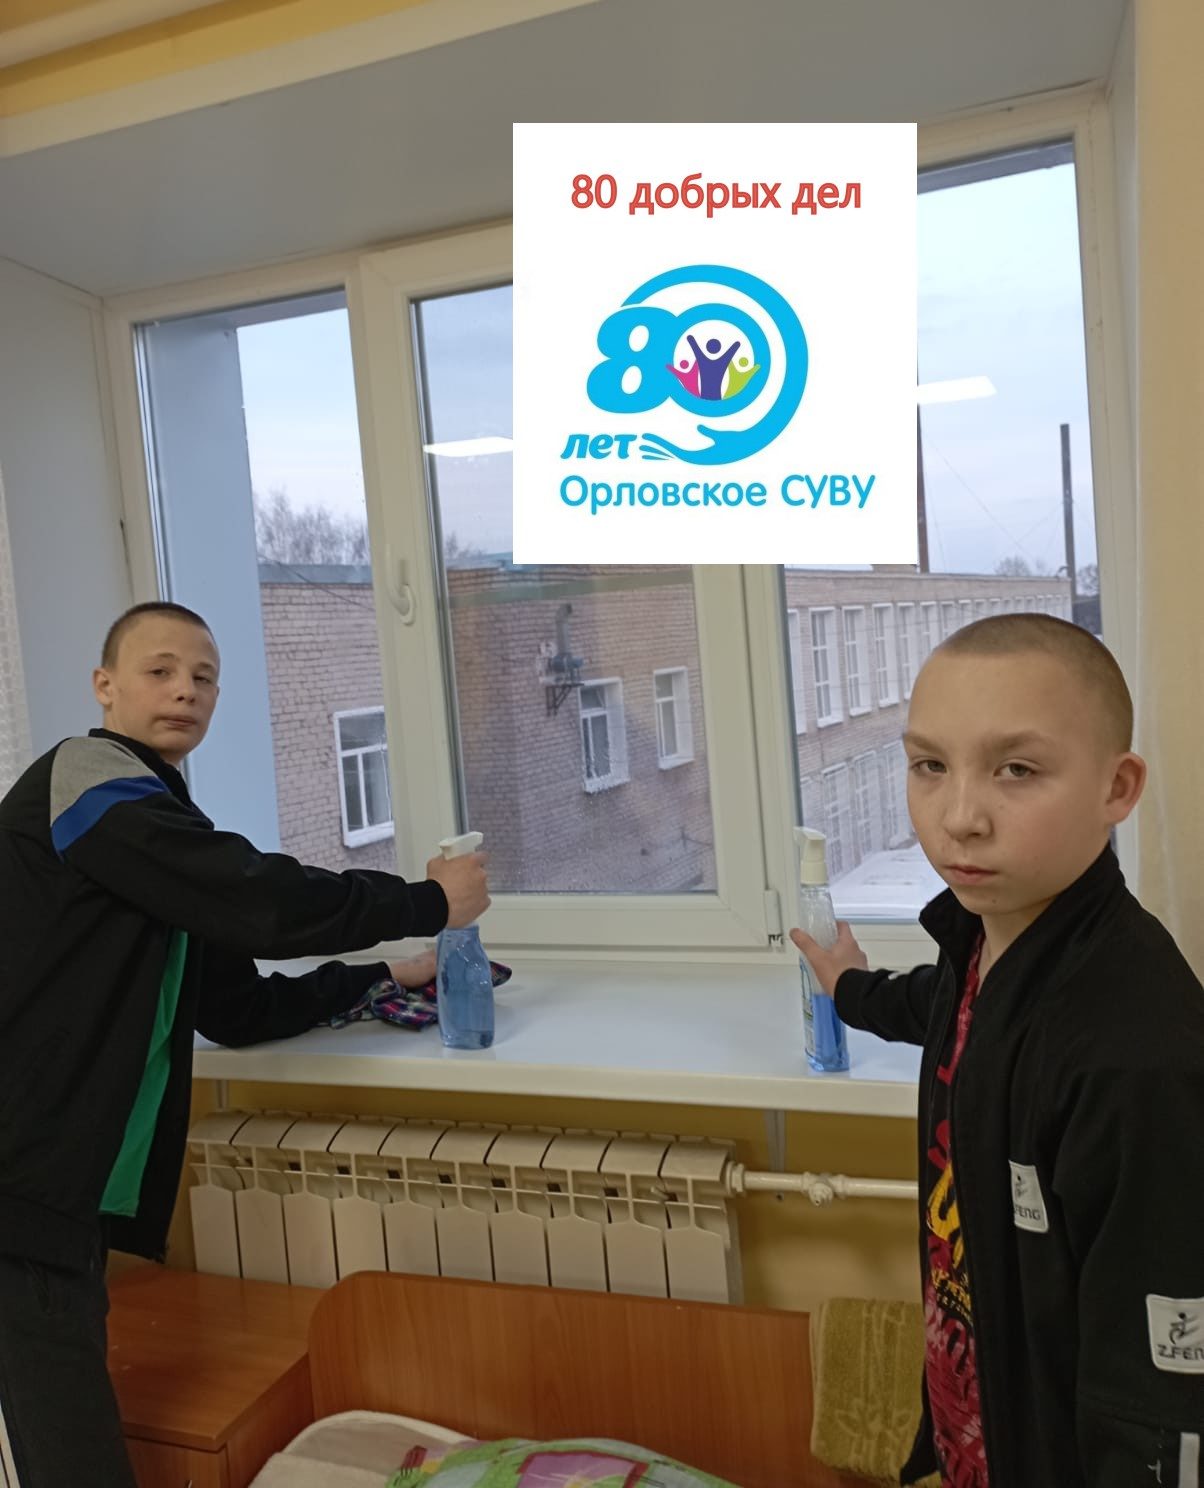 Продолжается акция «80 добрых дел», посвященная юбилею Орловского СУВУ